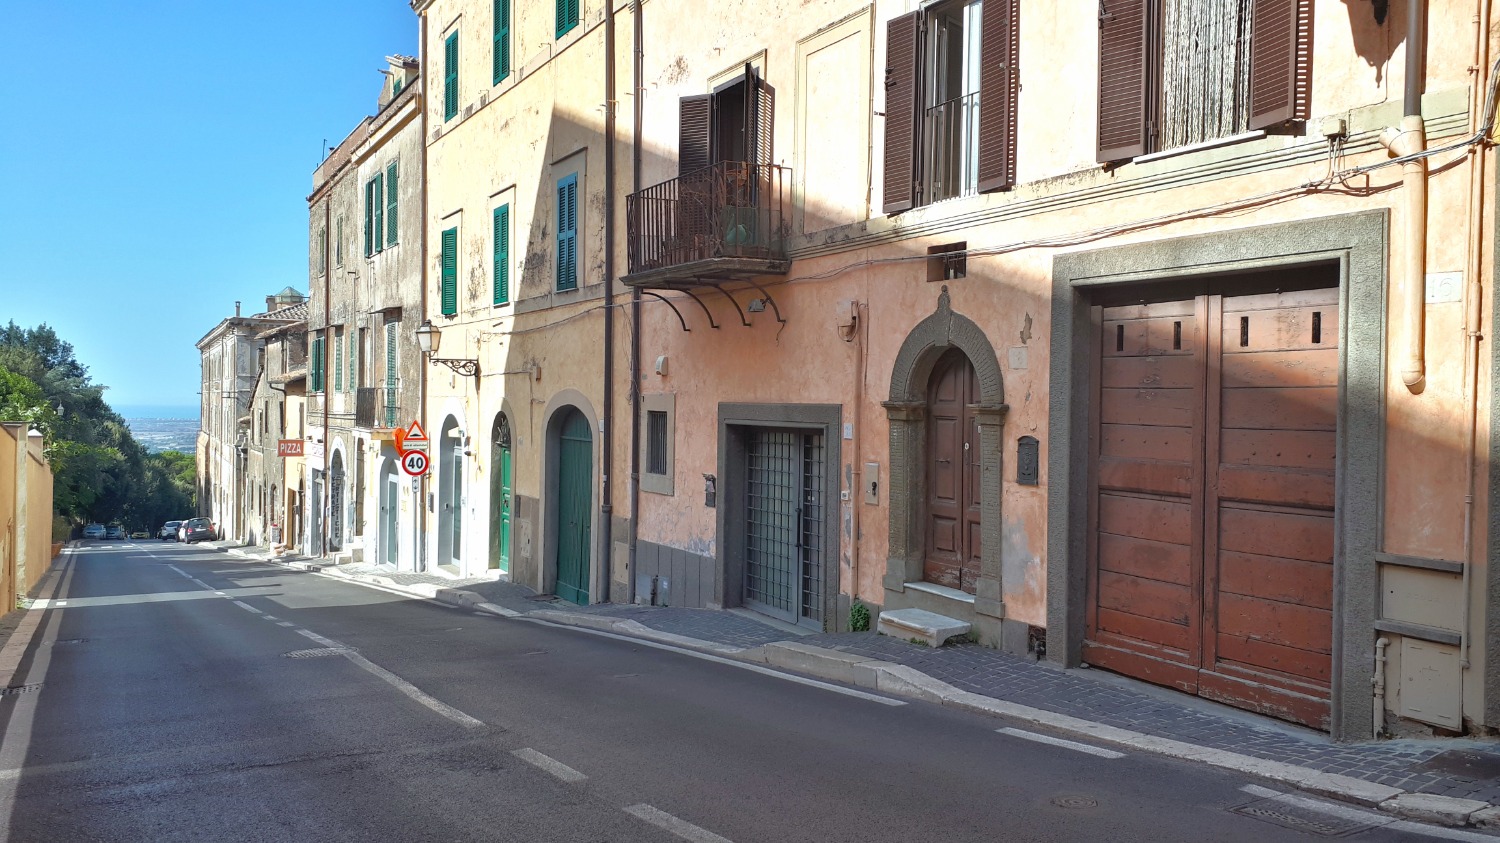 Palazzo / Stabile in vendita a Castel Gandolfo, 8 locali, prezzo € 510.000 | CambioCasa.it